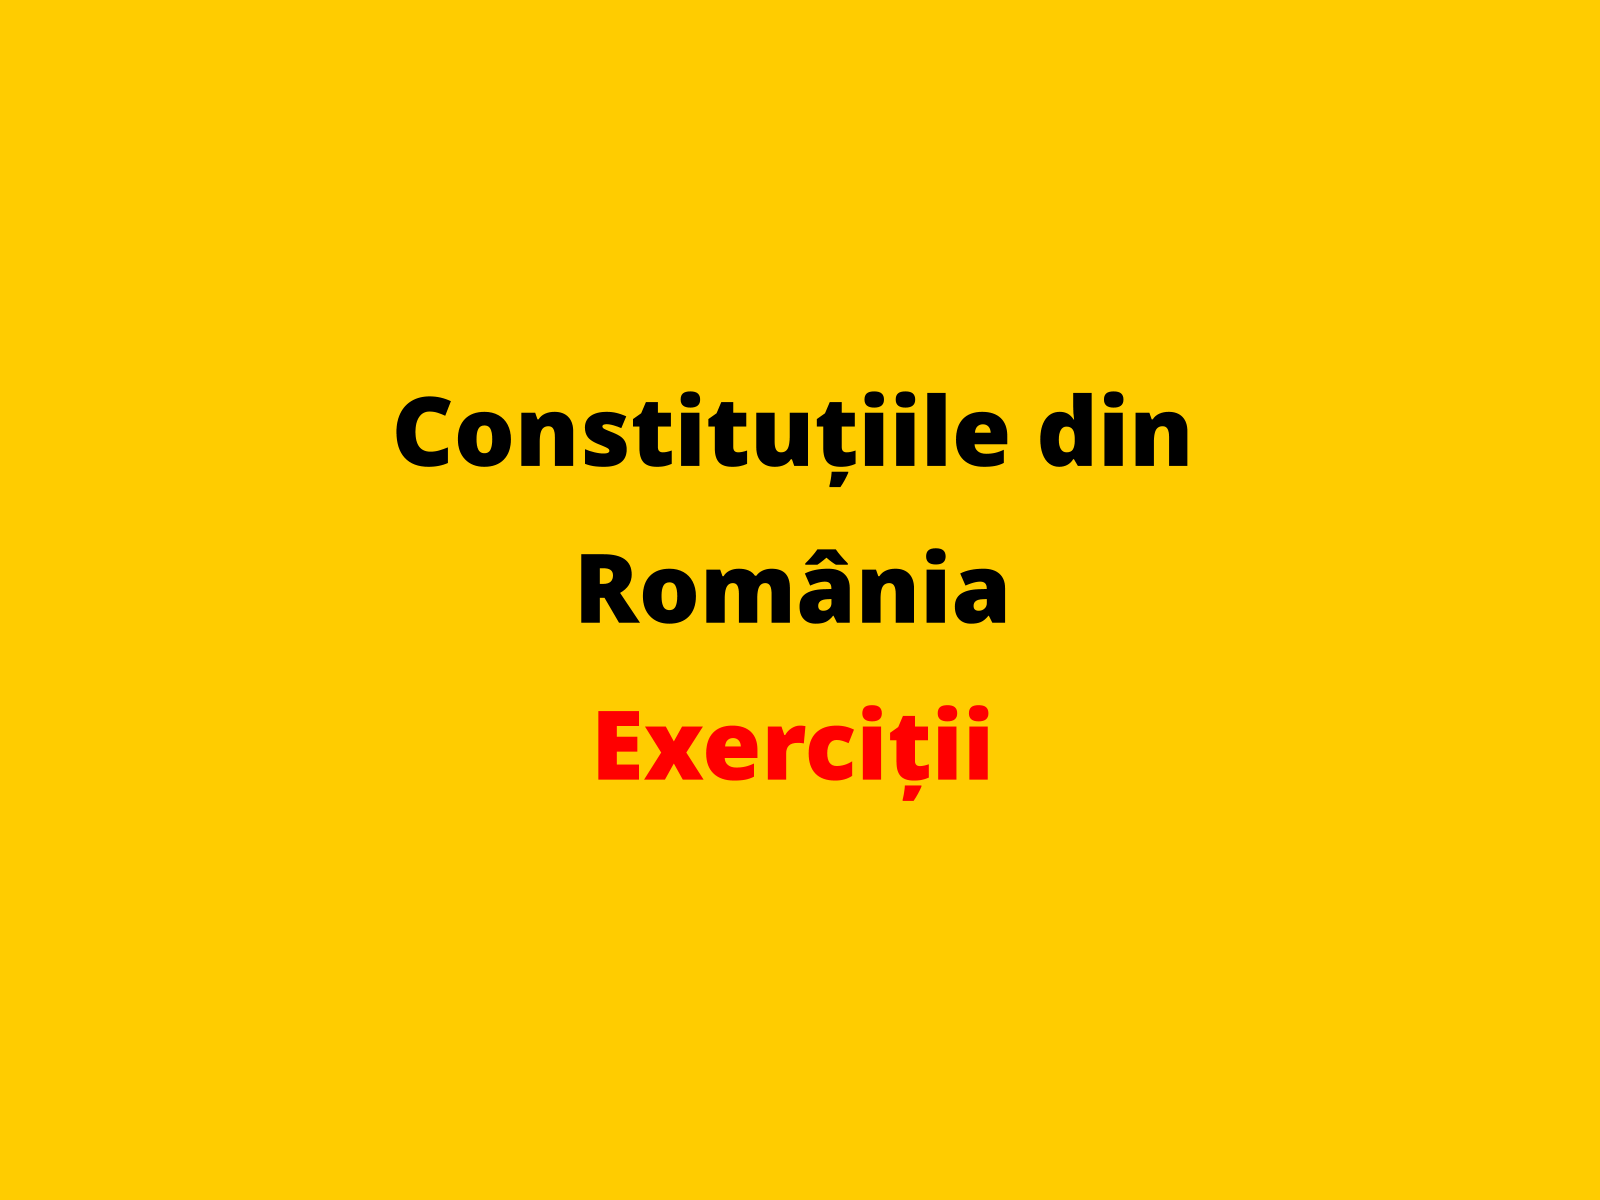 Menționați o caracteristică a legii fundamentale adoptate în statul român, în ultimul deceniu al secolului al XX-lea